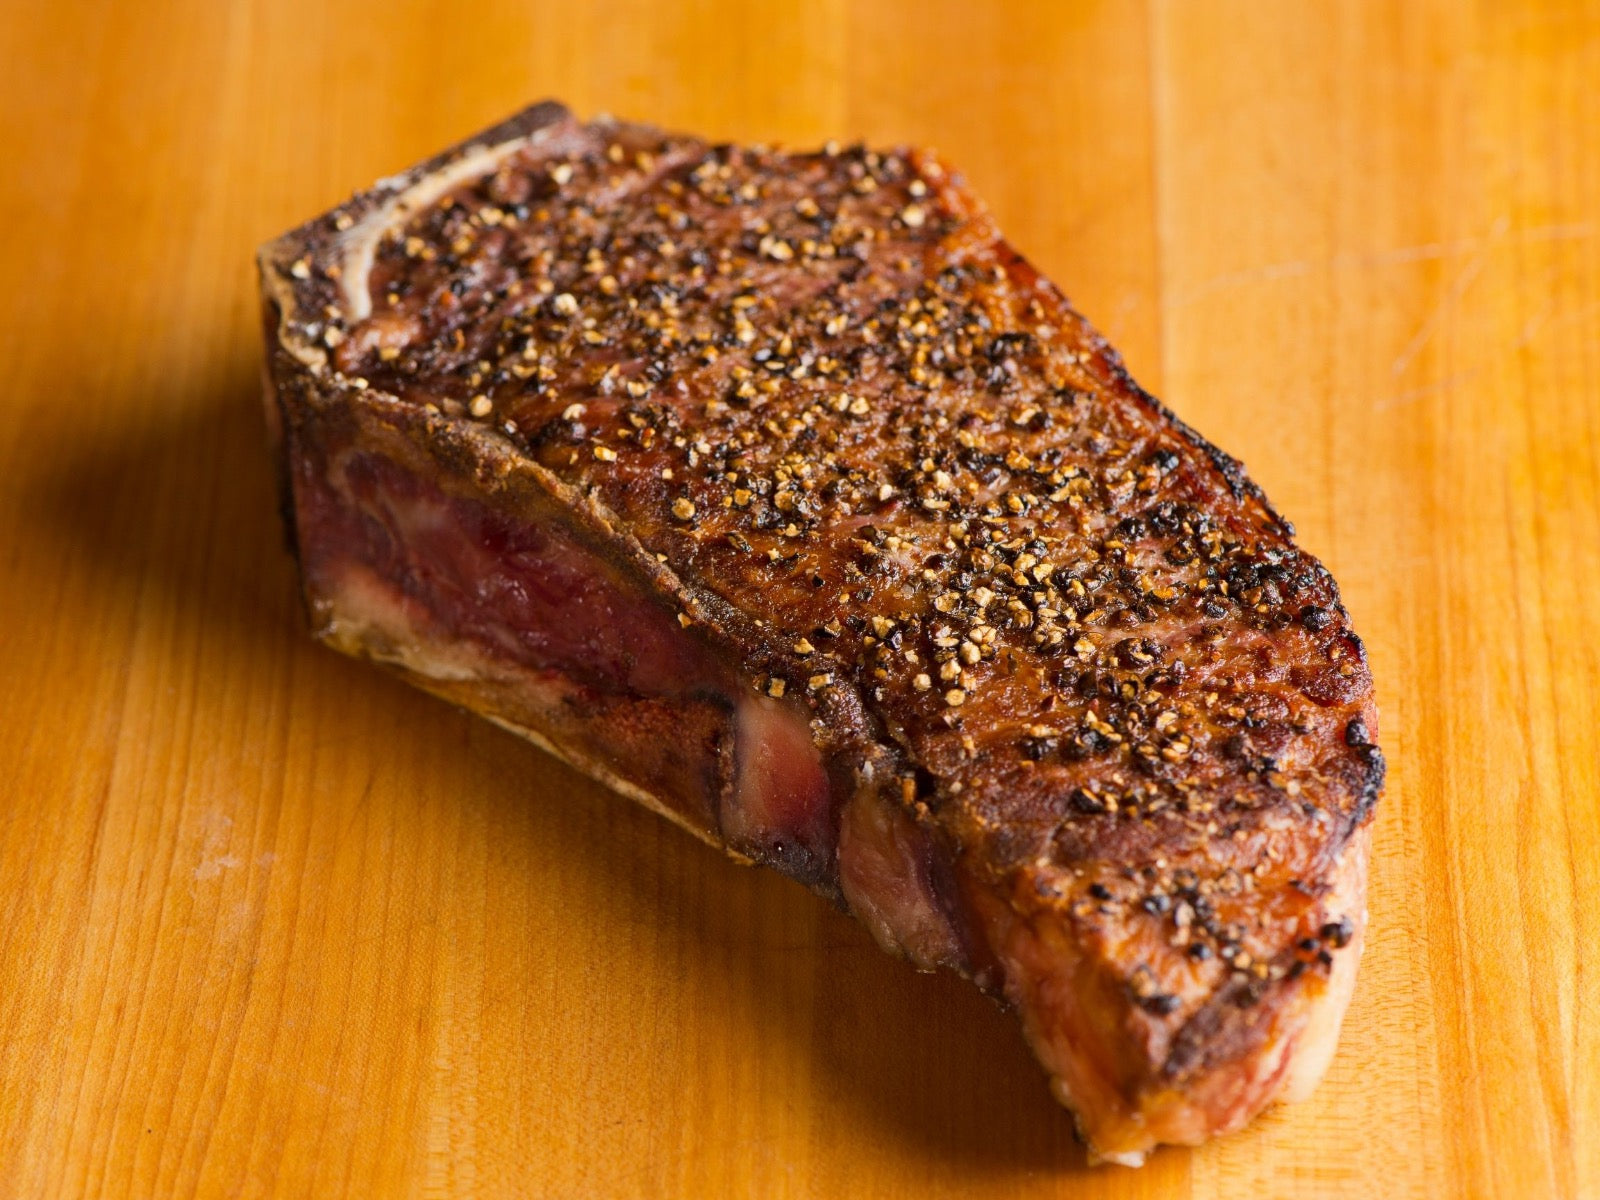 Bison Steak au Poivre - Recipe